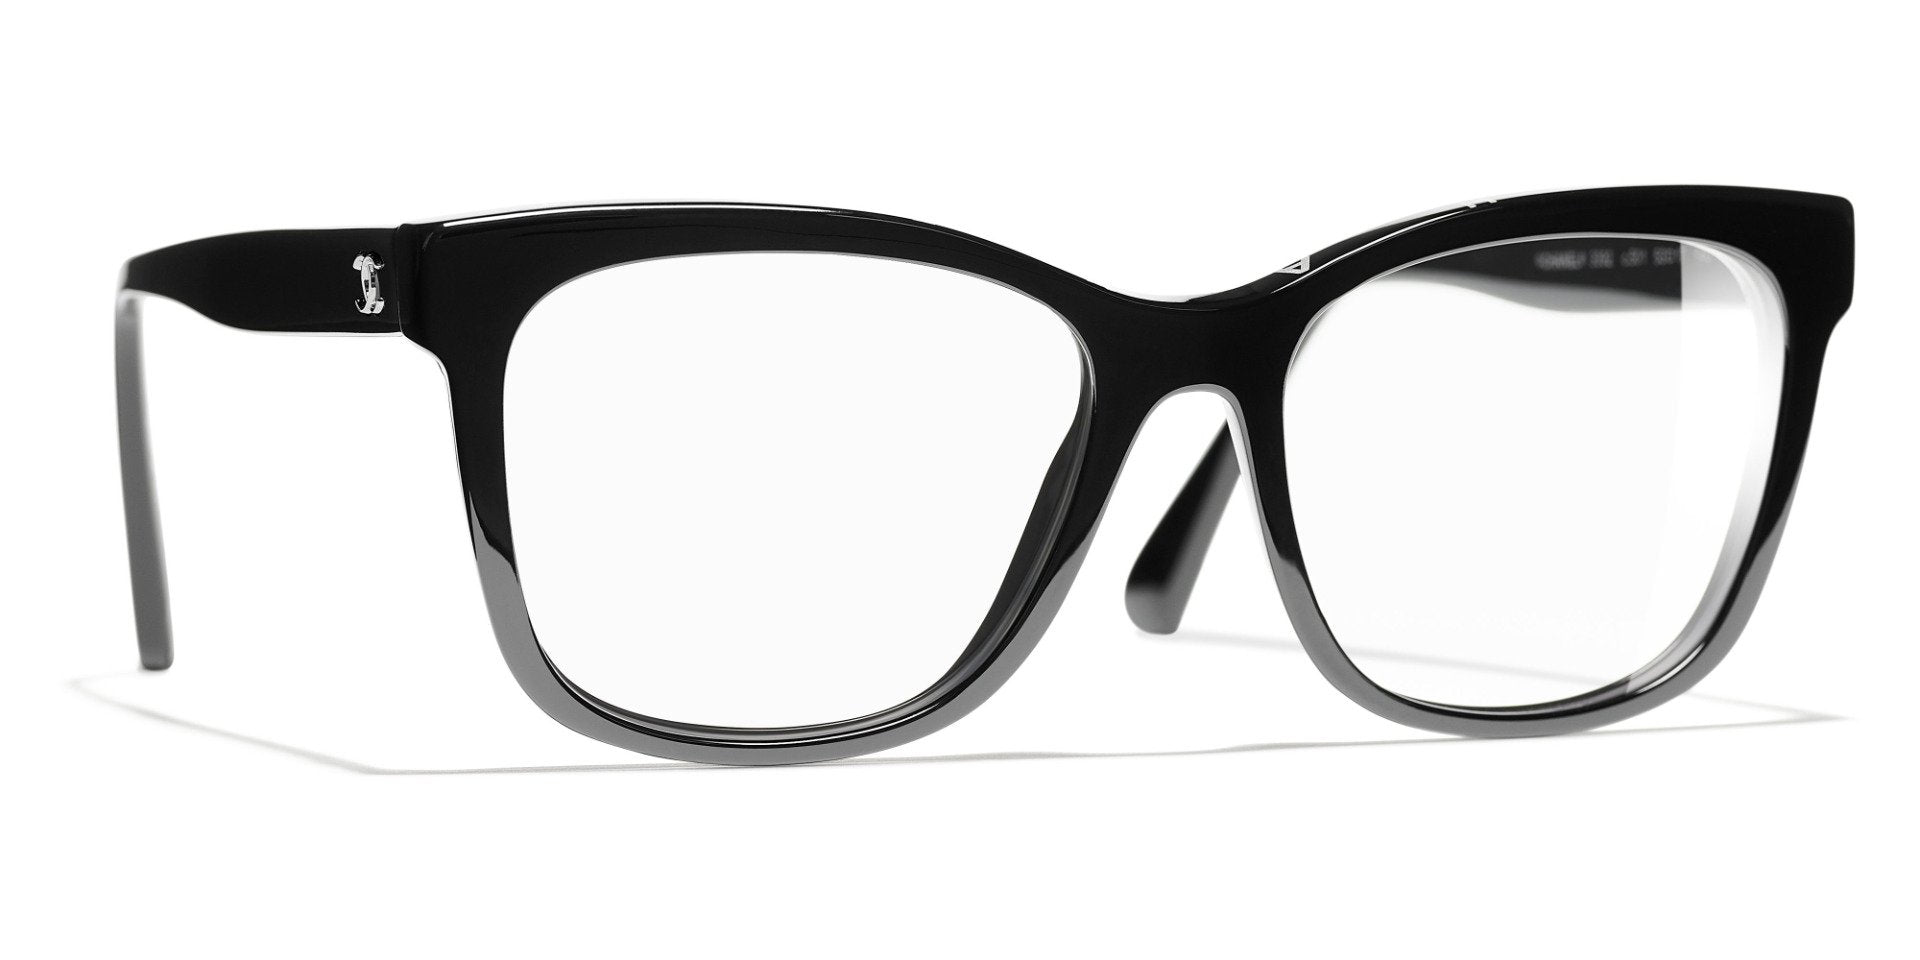 Chanel Square Eyeglasses C501 Black